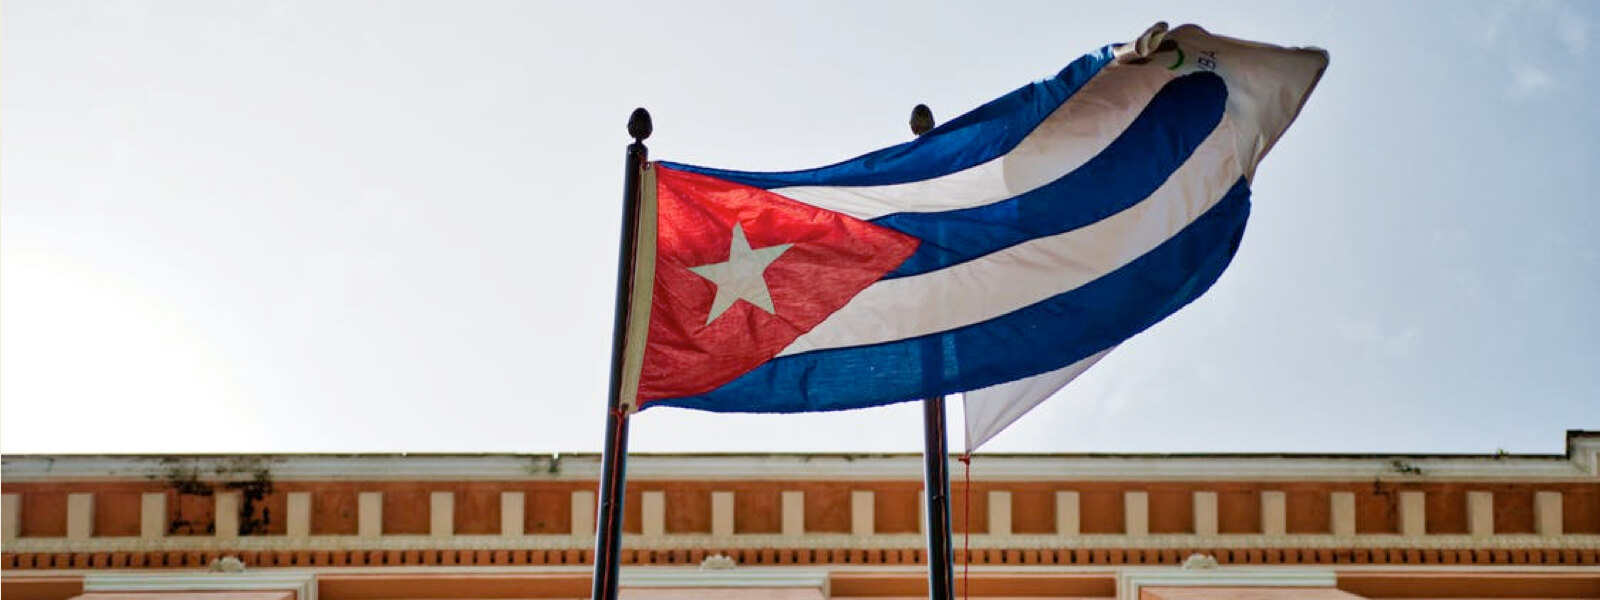 Cuban flag waving against the blue sky.